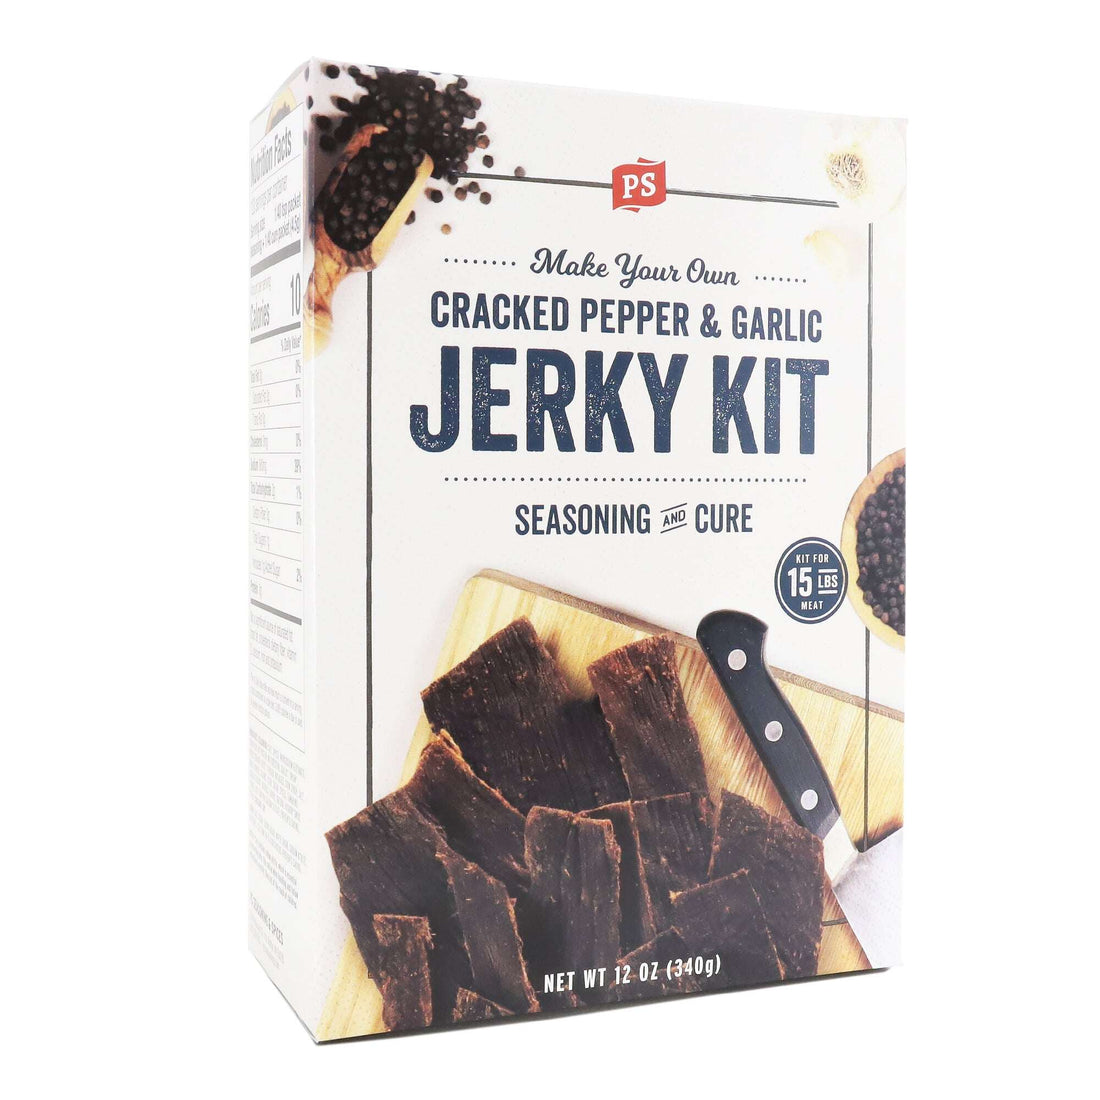 Jerky Kit - Cracked Pepper & Garlic